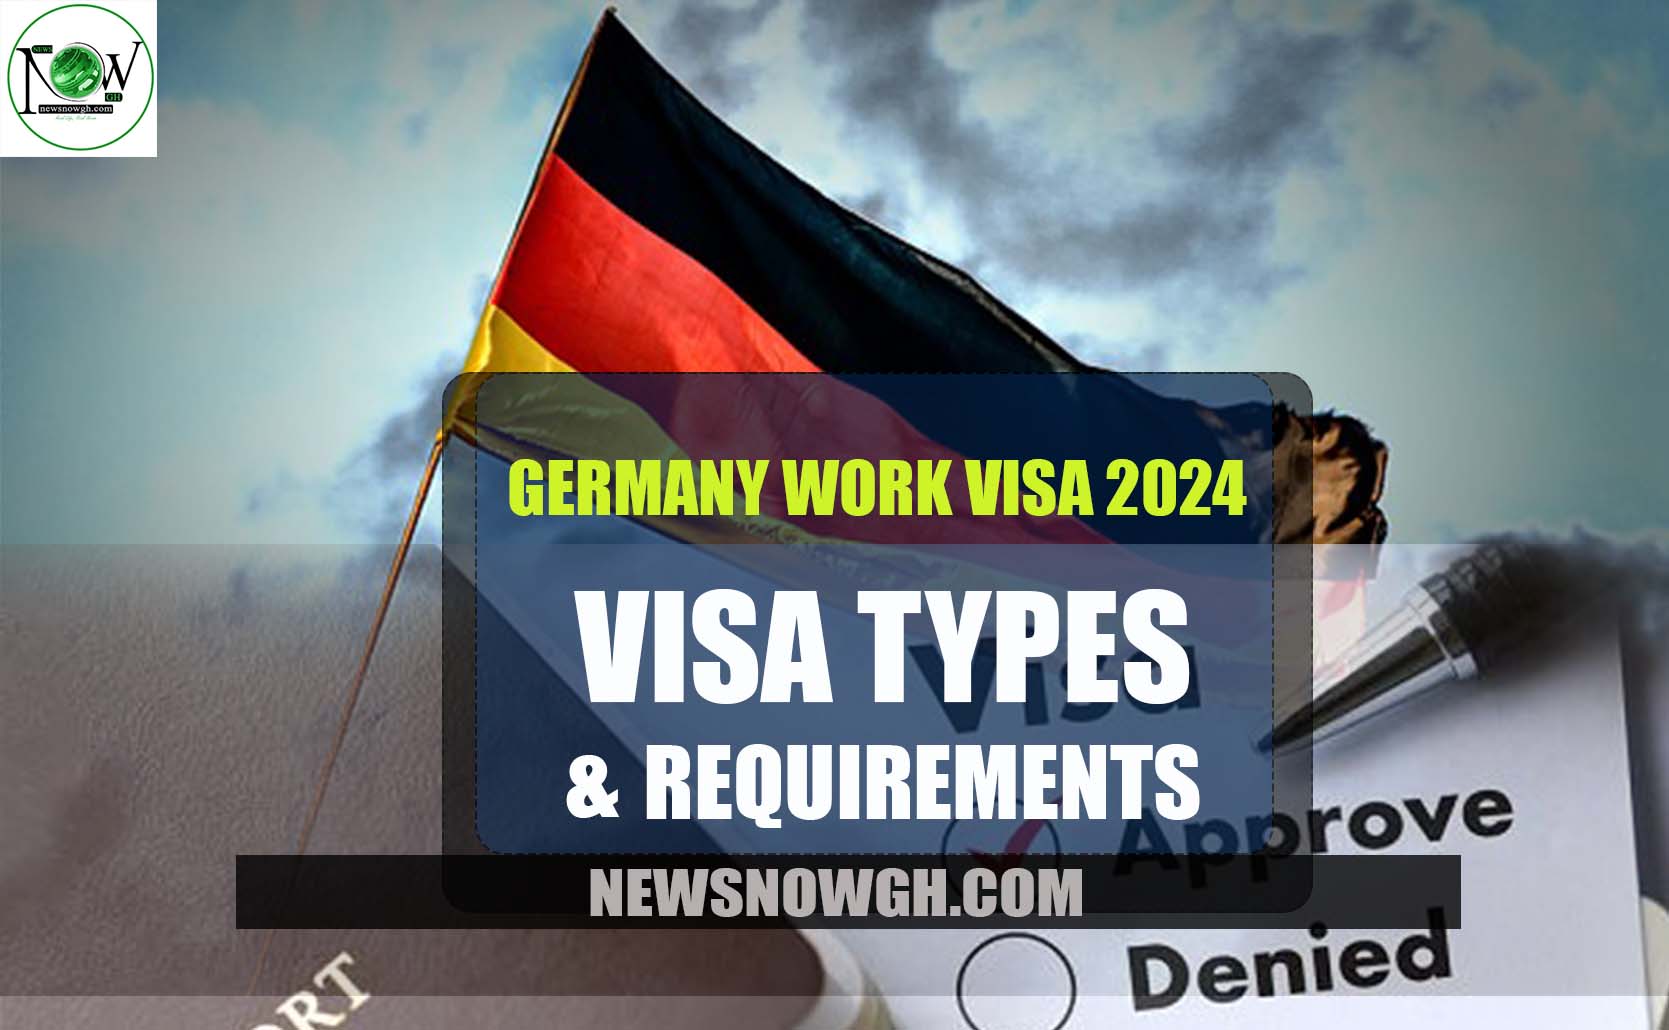 Germany Work Visa 2024 Visa Types & Requirements